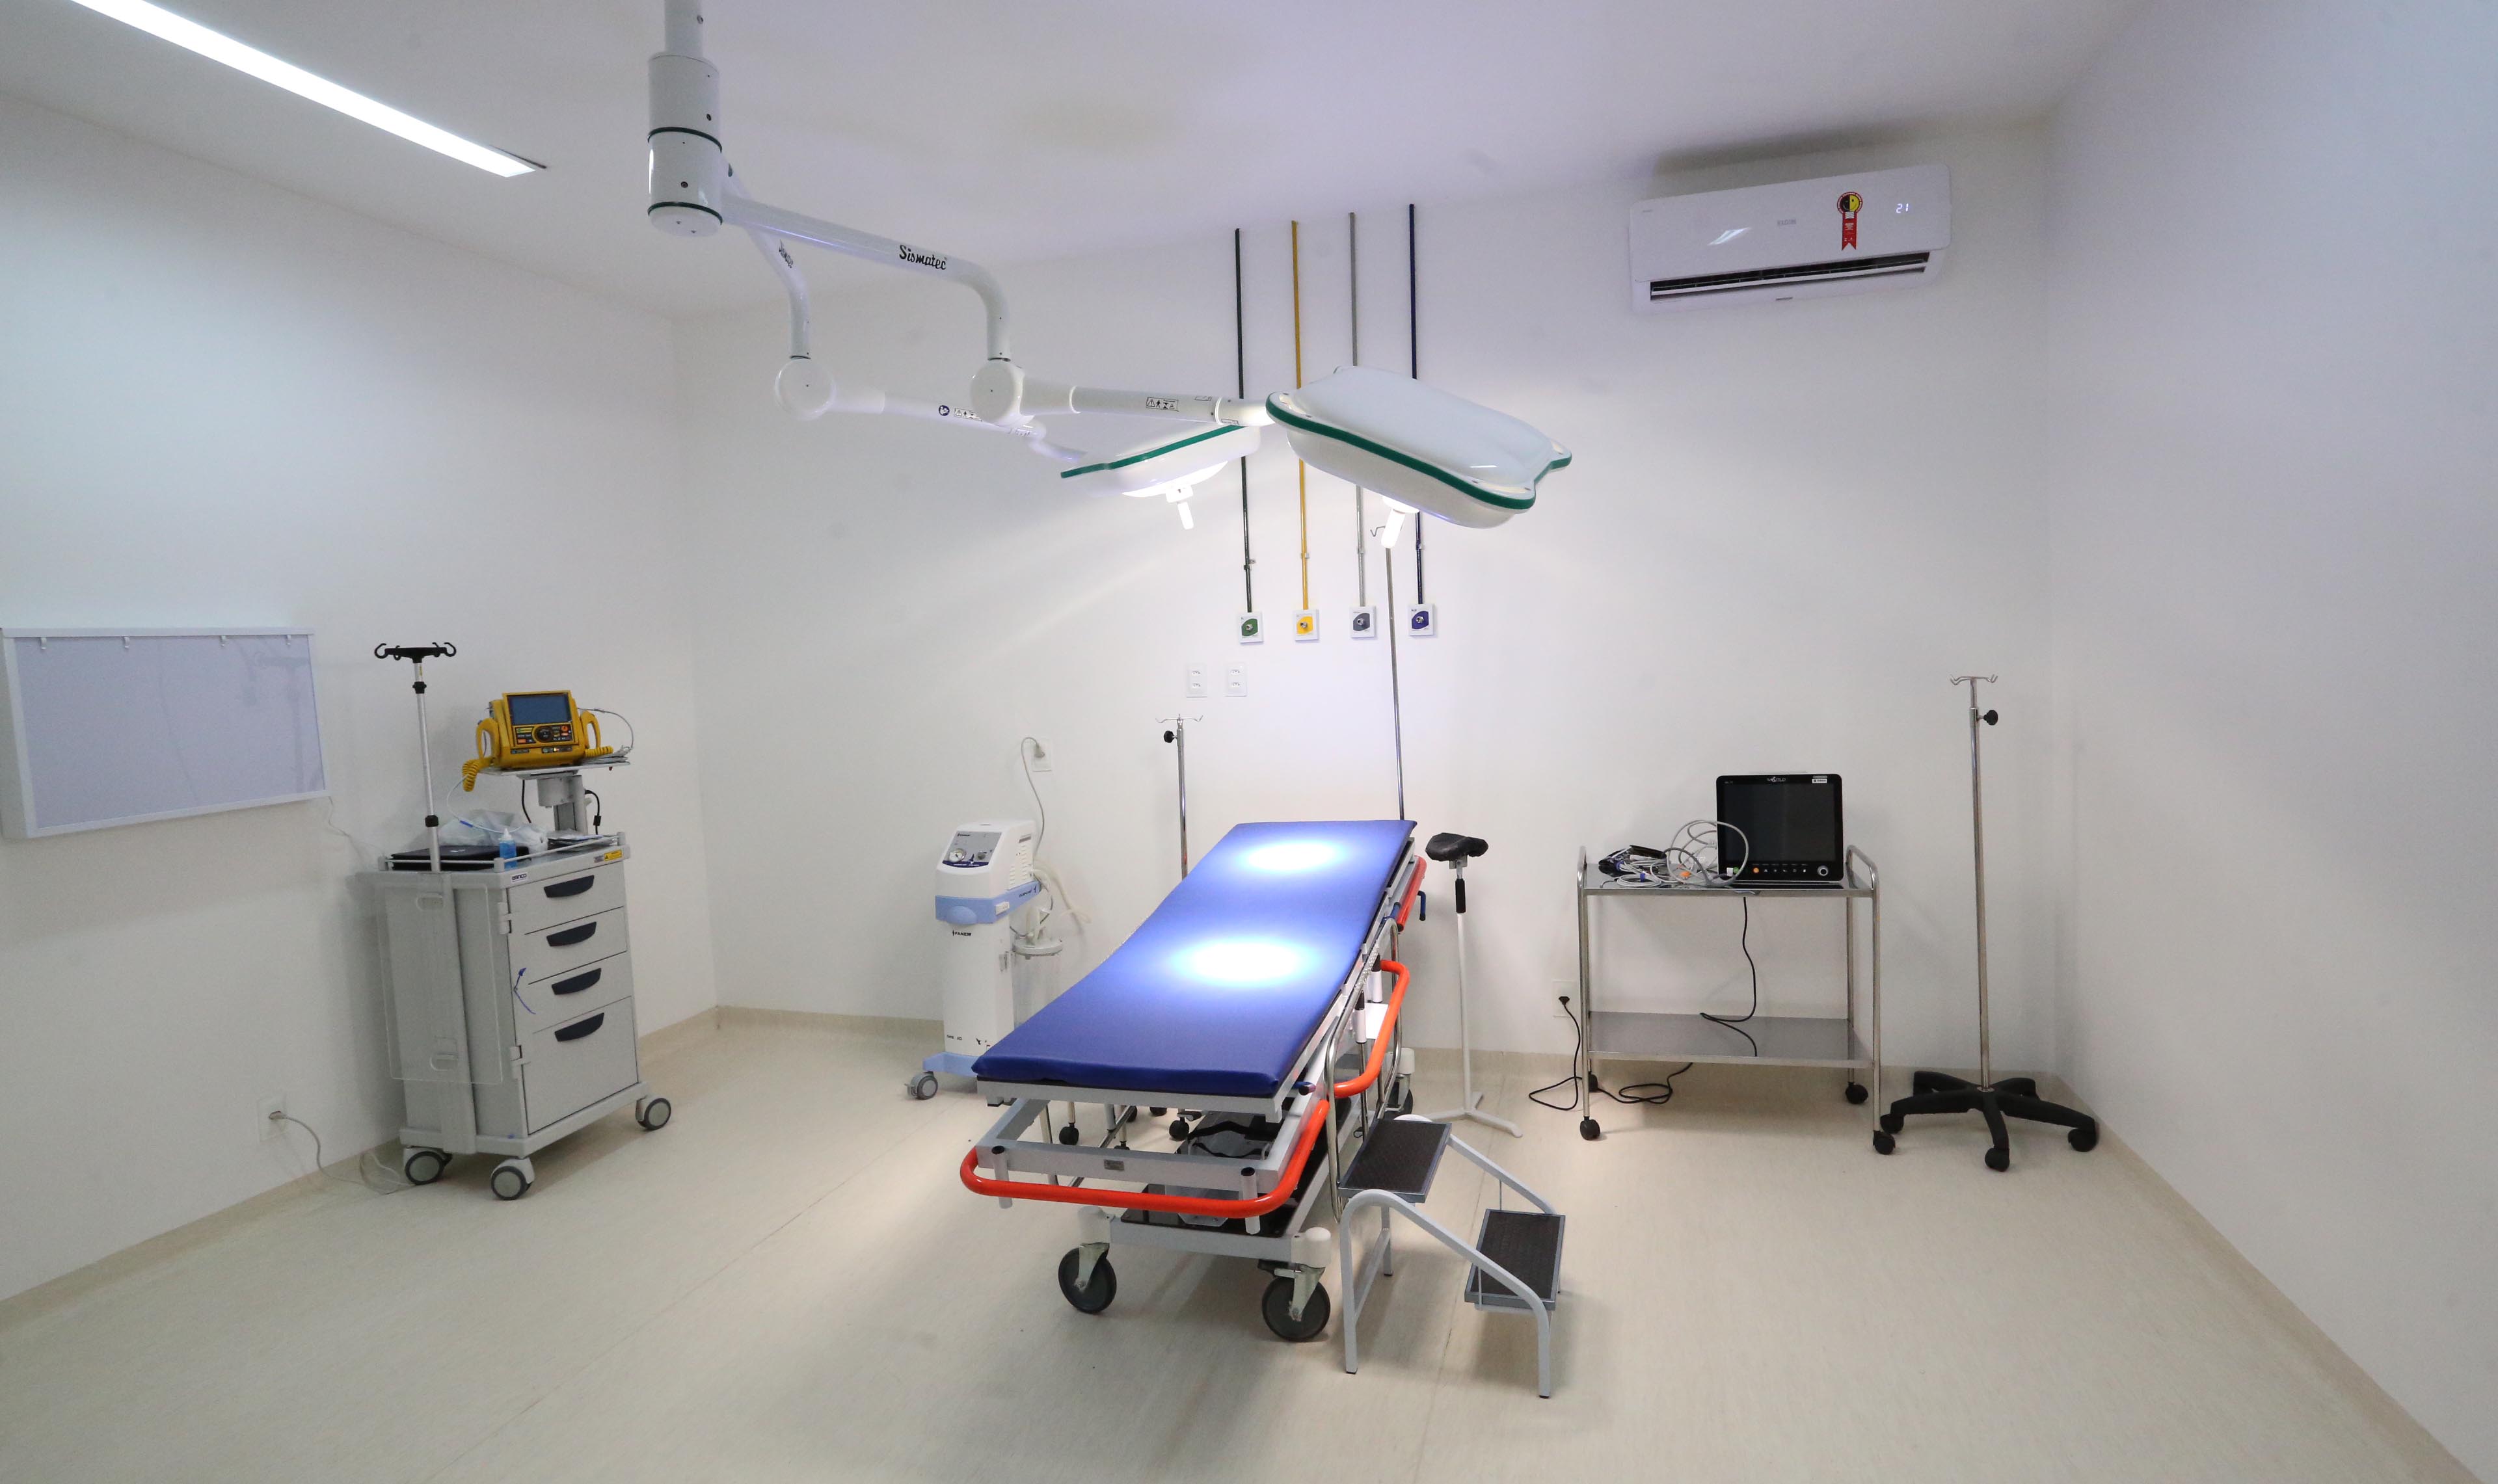 interior de um centro cirúrgico, mostrando a cama cirúrgica e os equipamentos